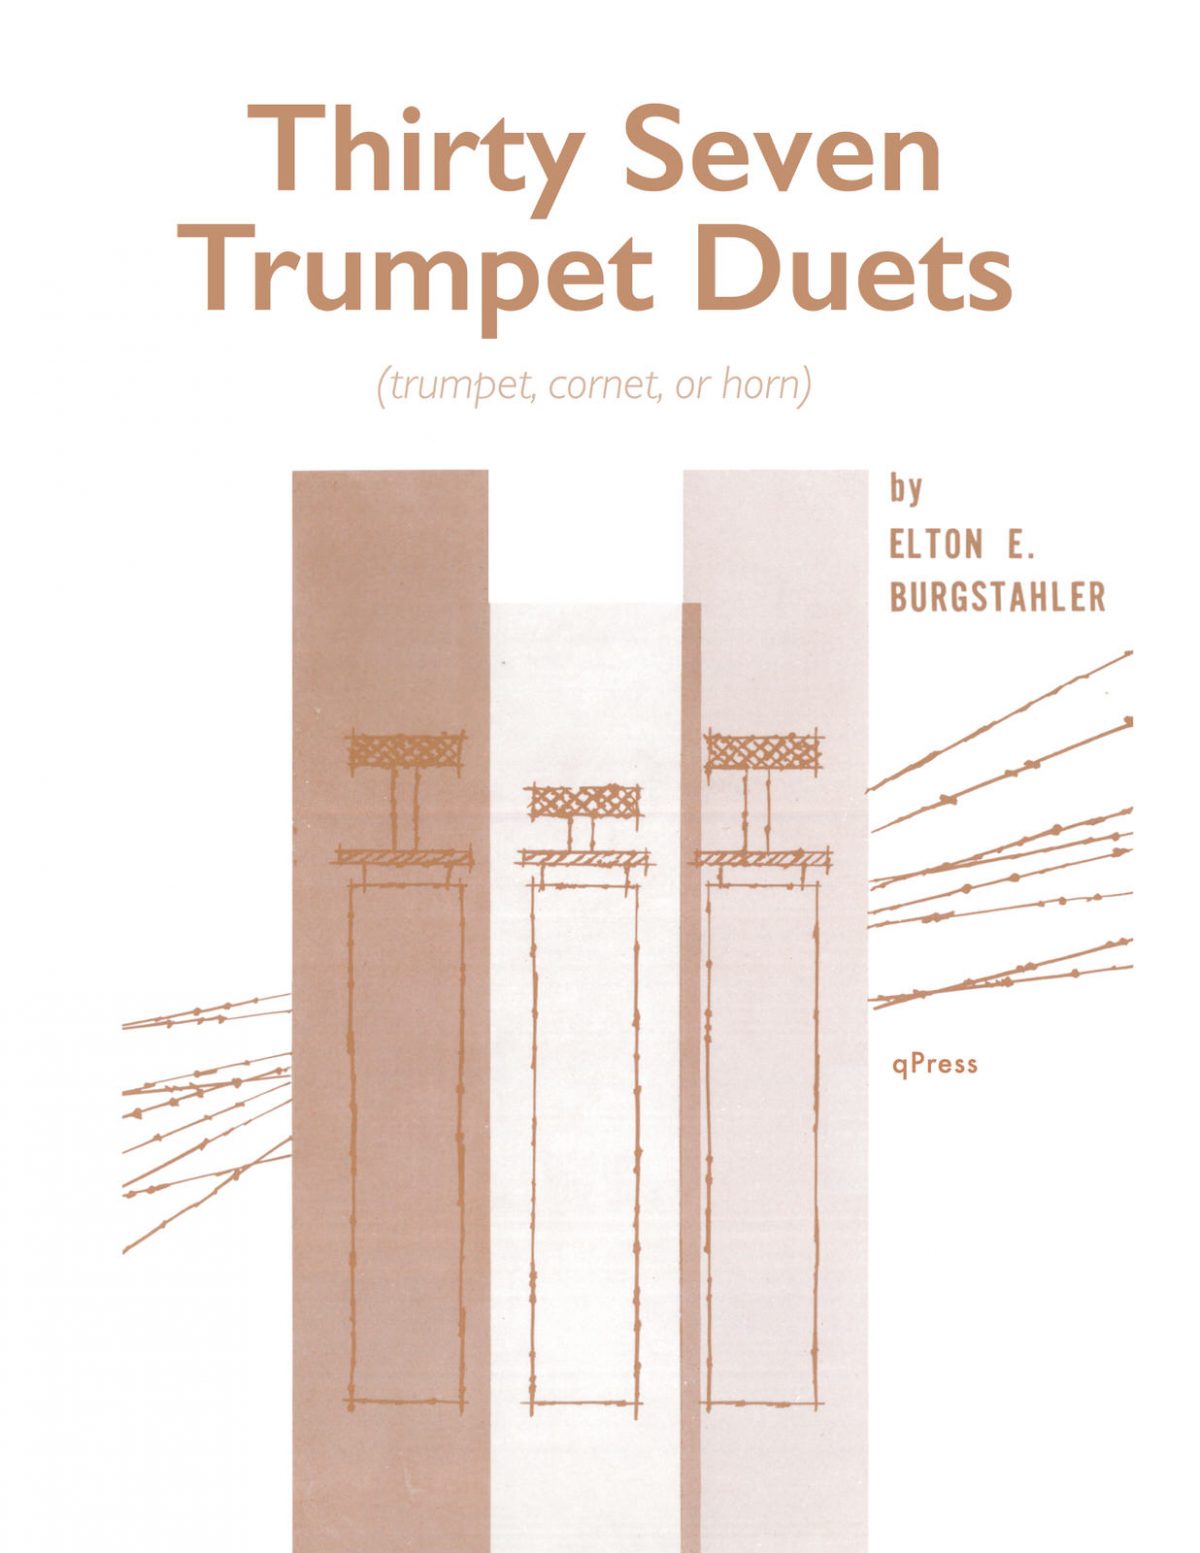 Burgstahler, Elton E, 37 Trumpet Duets-p01